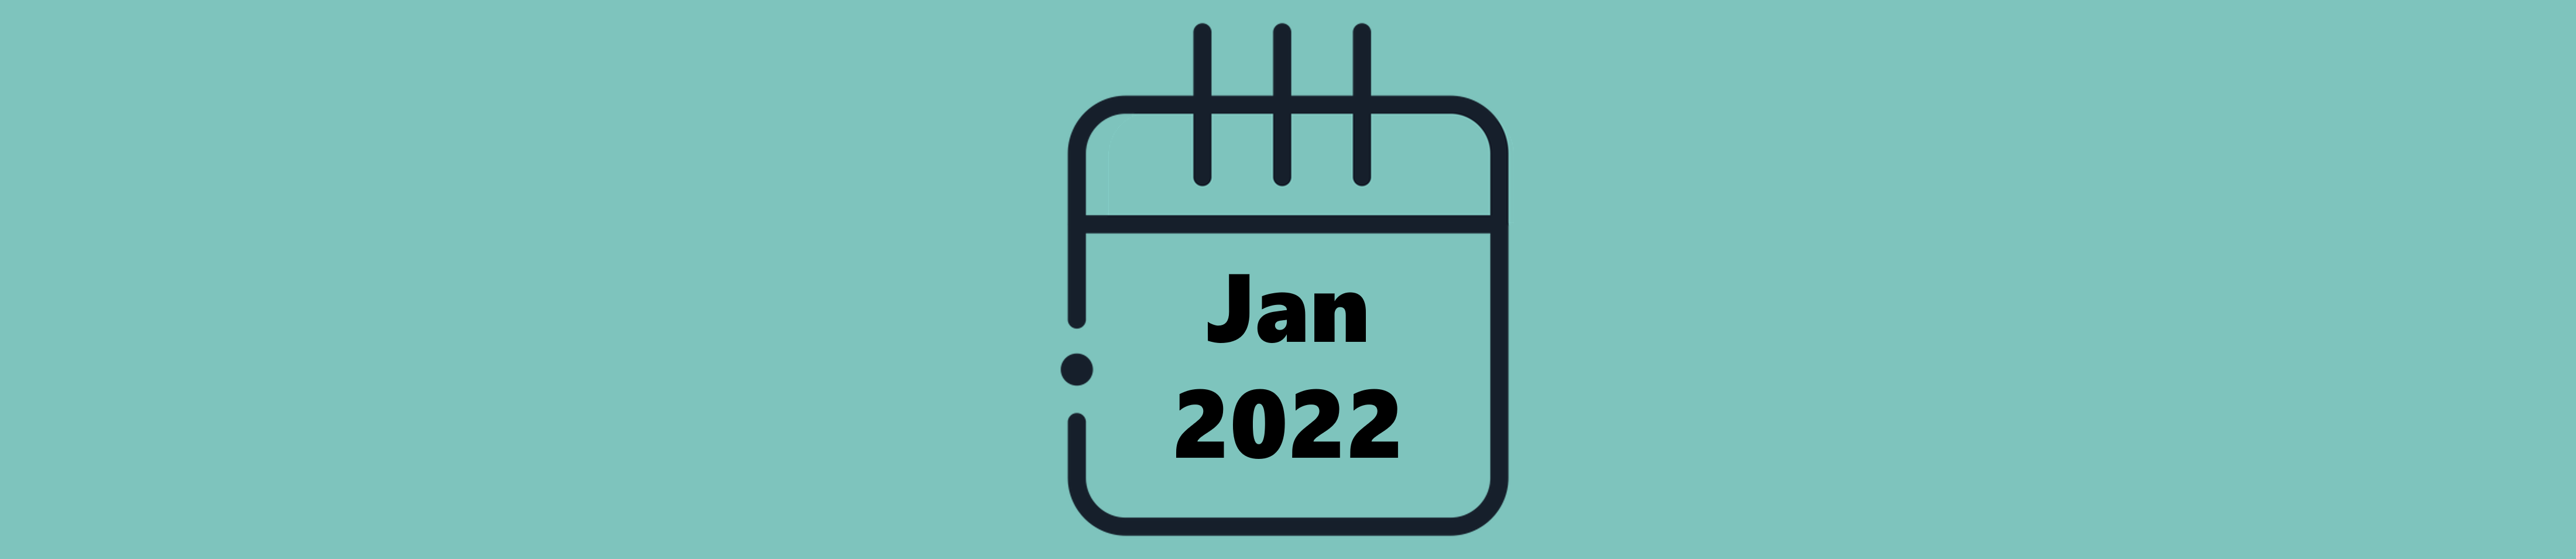 Indicações do Mês de Janeiro (2022)